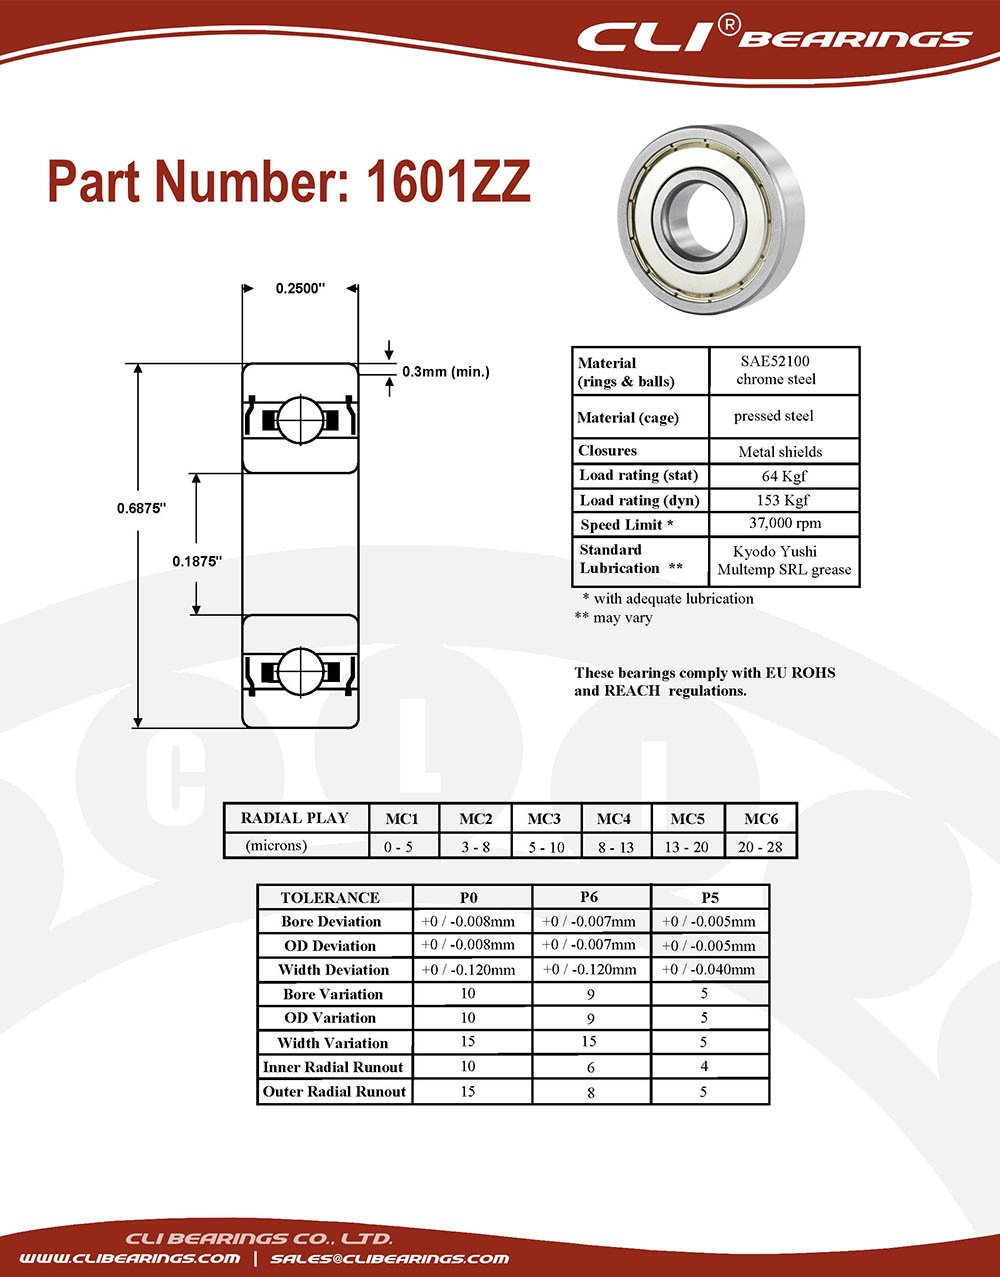 Original 1601zz miniature bearing 3 16x11 16x1 4 0 1875 x 0 6875 x 0 25 inch   cli bearings co ltd nw